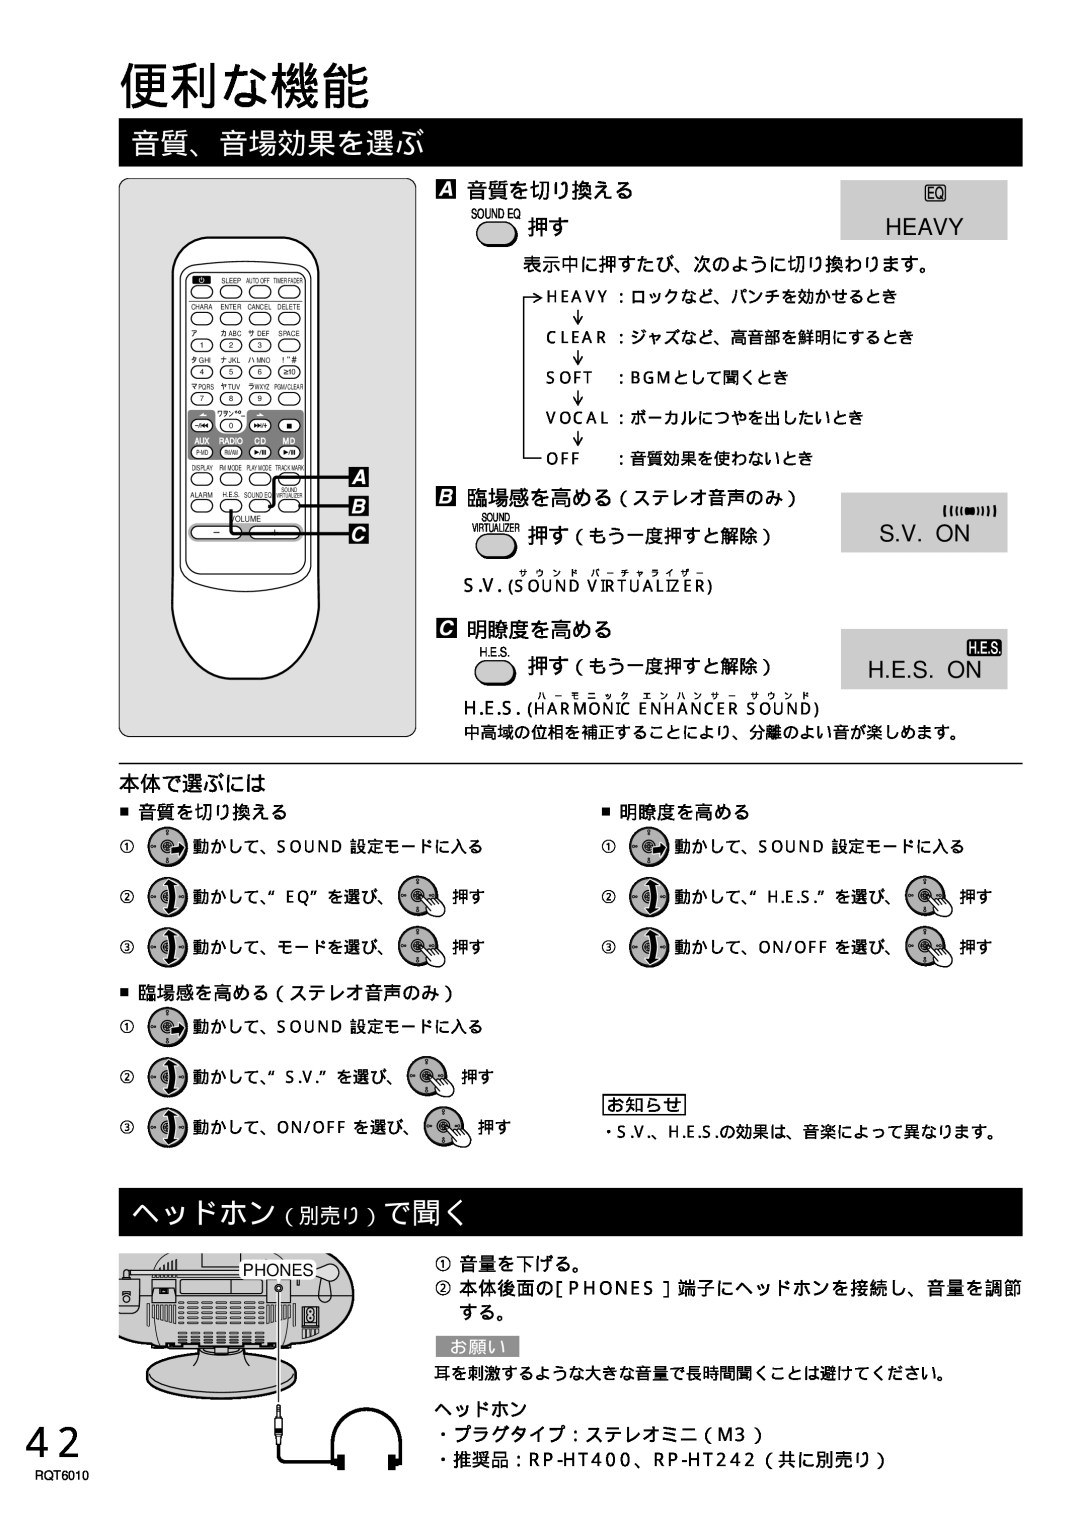 Panasonic RX-MDX55 manual 便利な機能, 音質、音場効果を選ぶ, ヘッドホン（別売り）で聞く, Heavy, S.V. On, H.E.S. On, 本体で選ぶには 